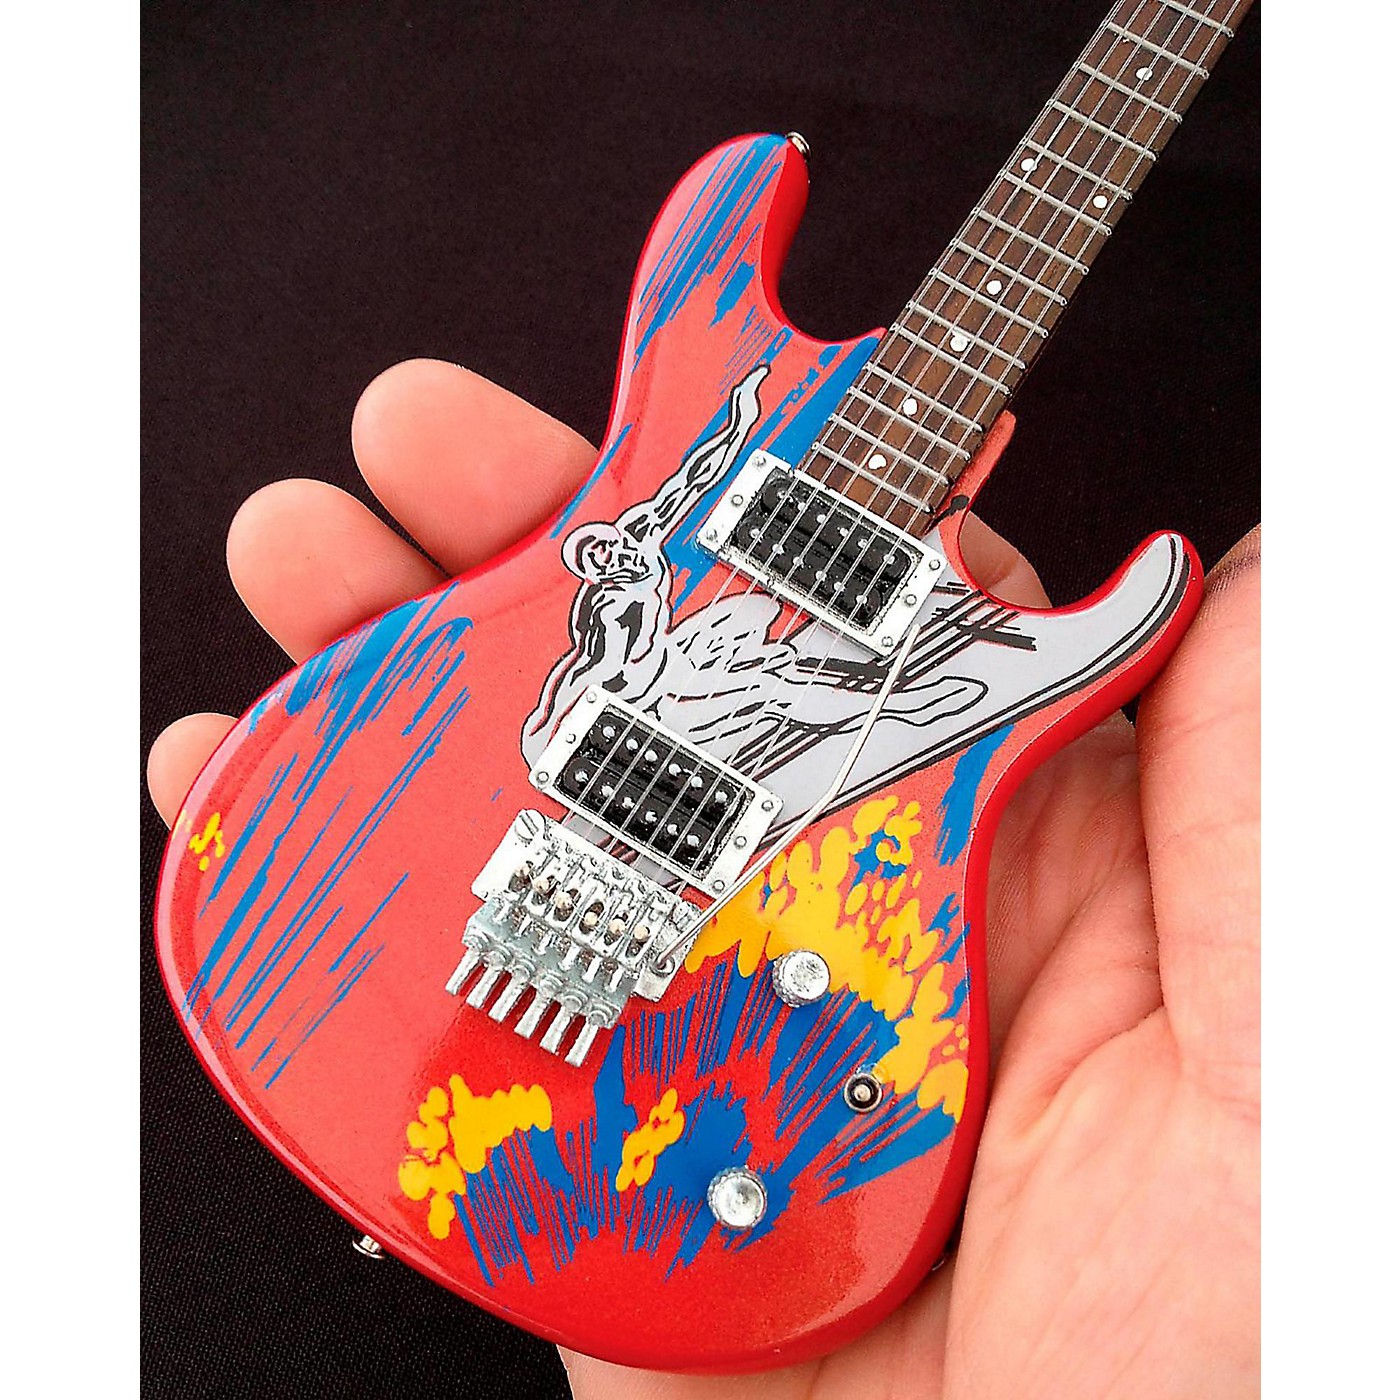 Axe Heaven Joe Satriani Silver Surfer Miniature Guitar Replica Collectible thumbnail